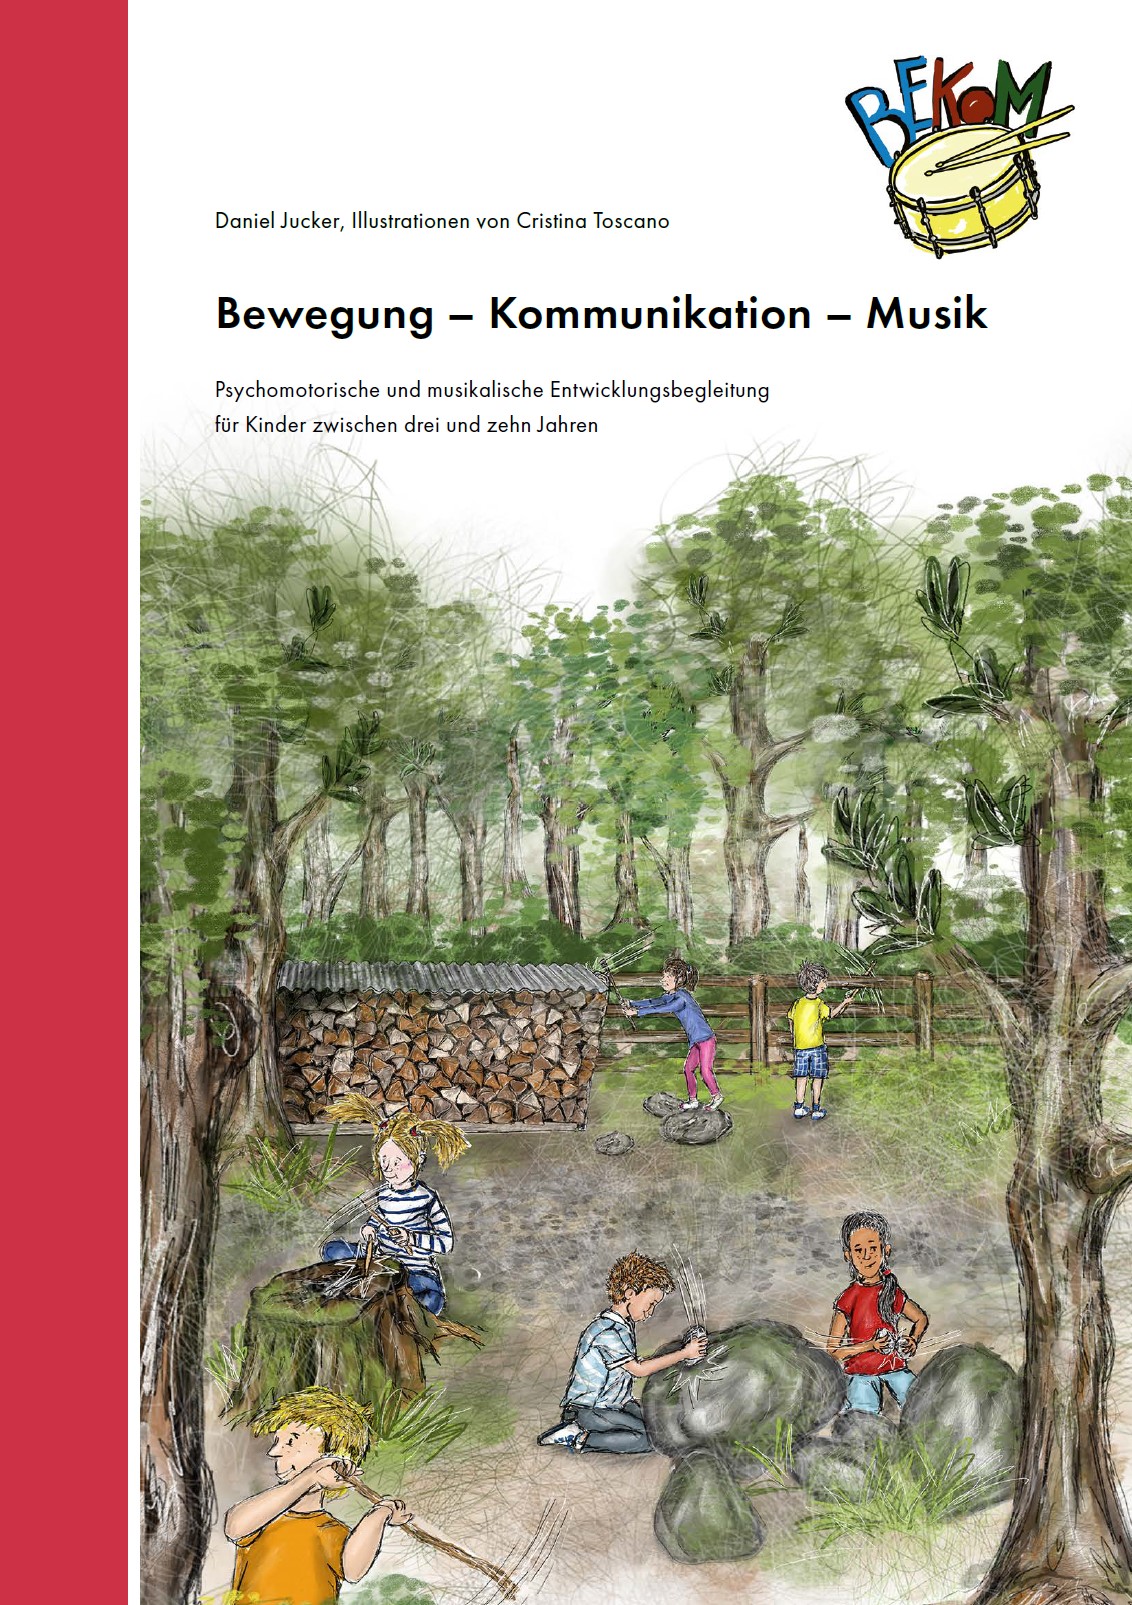  Das Bild zeigt das Buchcover. Darauf sieht man spielende Kinder im Wald. 